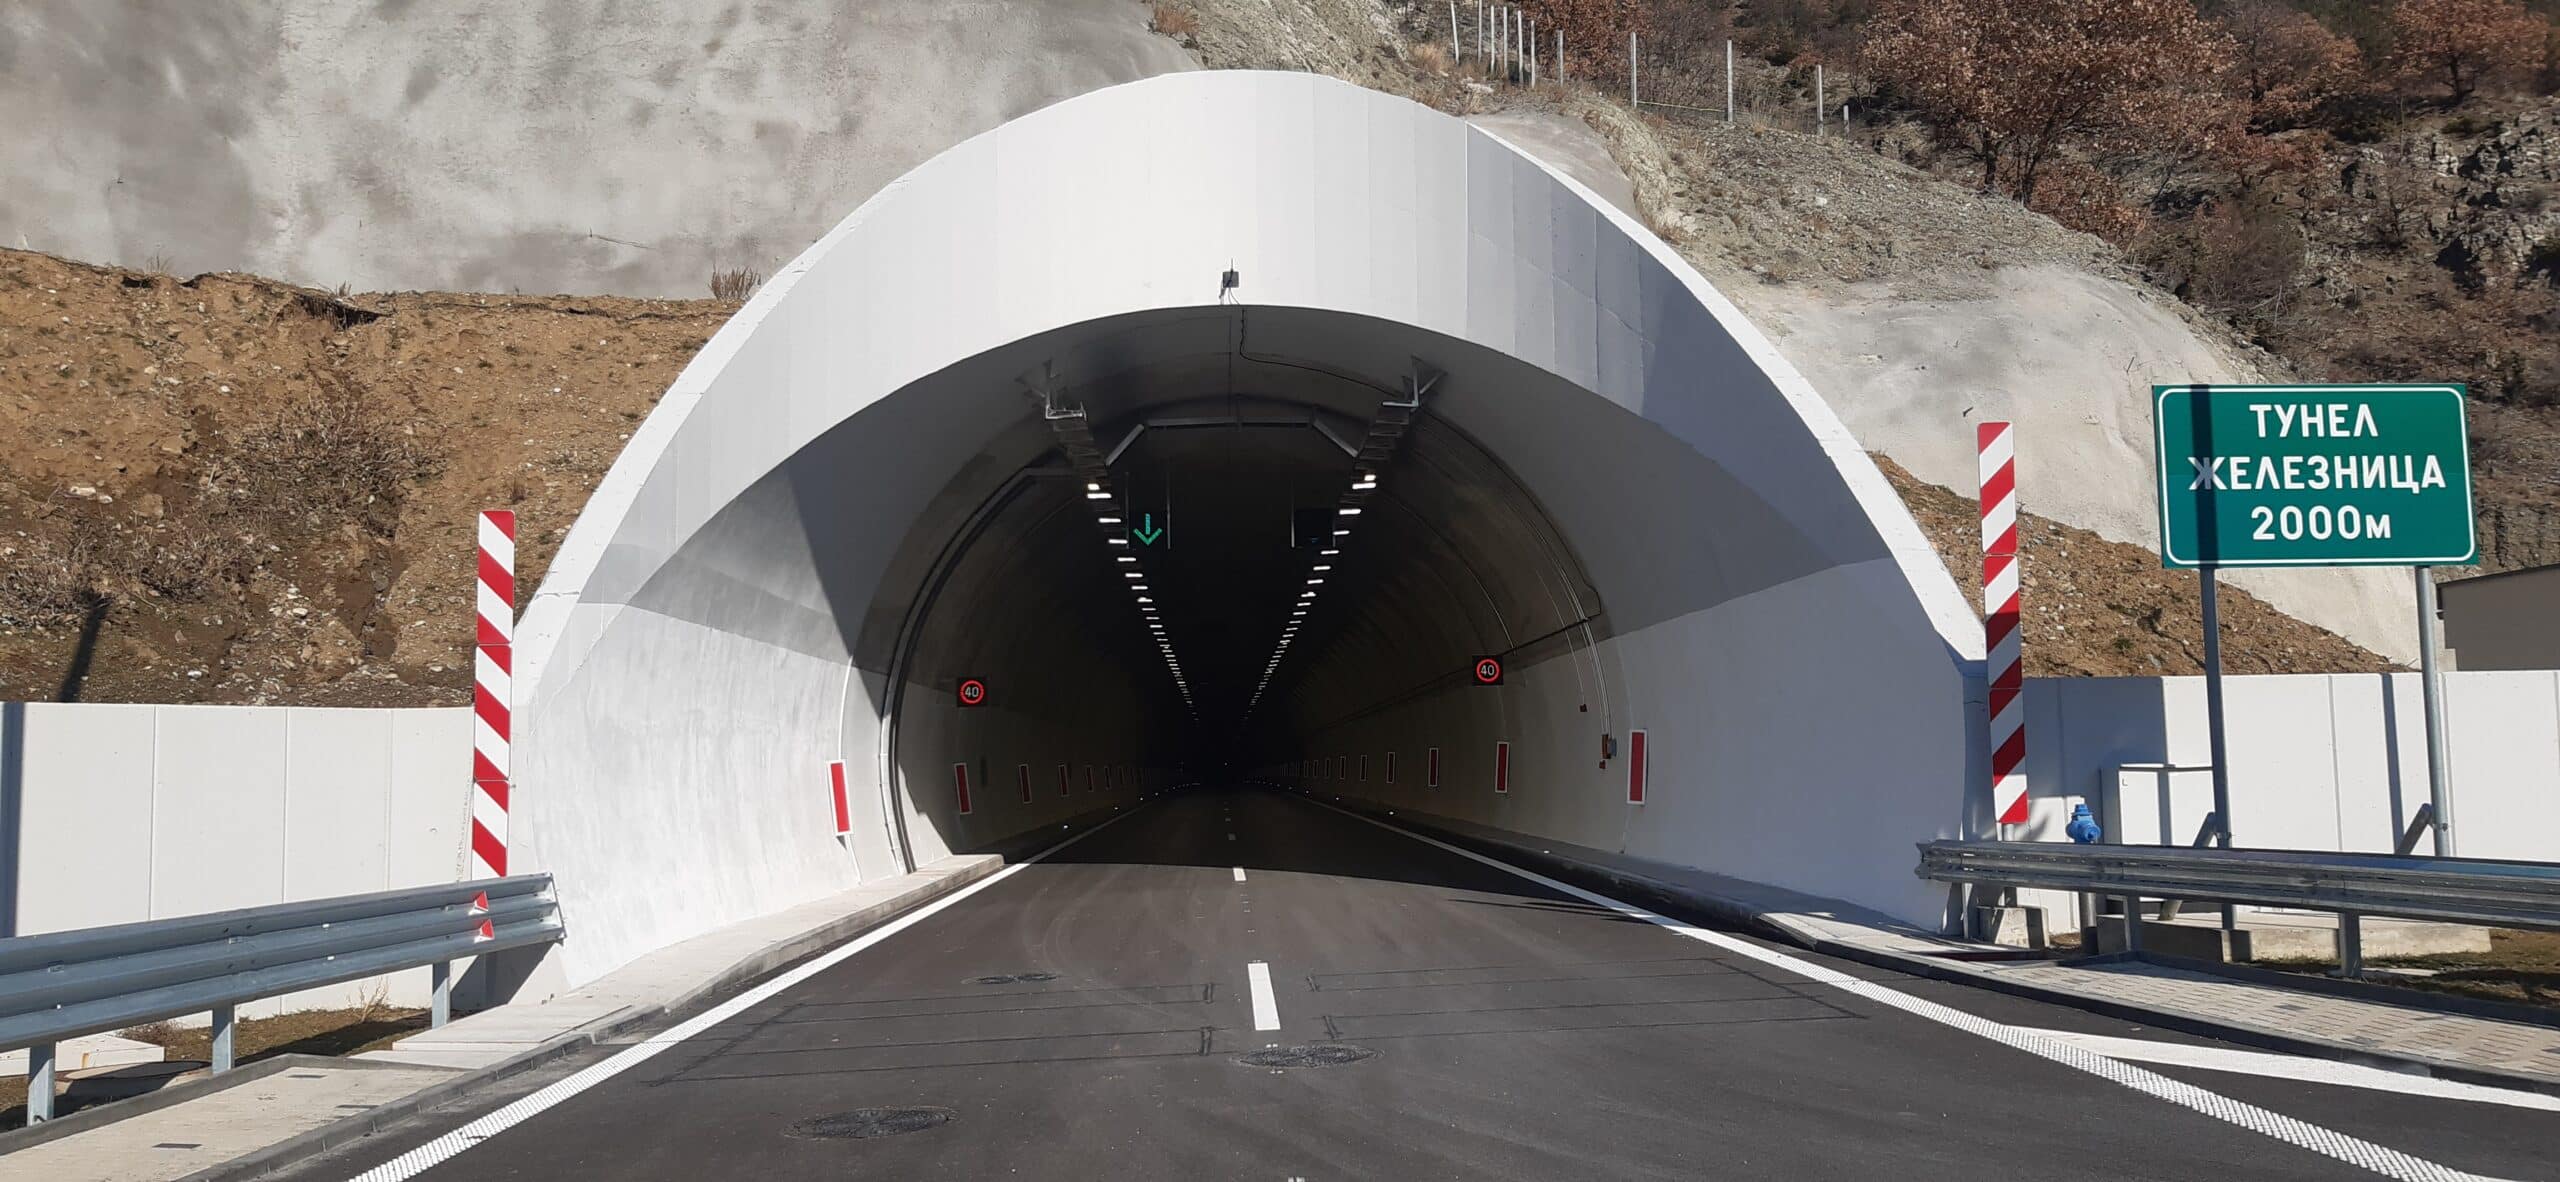 Пътнотранспортно произшествие е станало в тунел Железница близо до Симитли